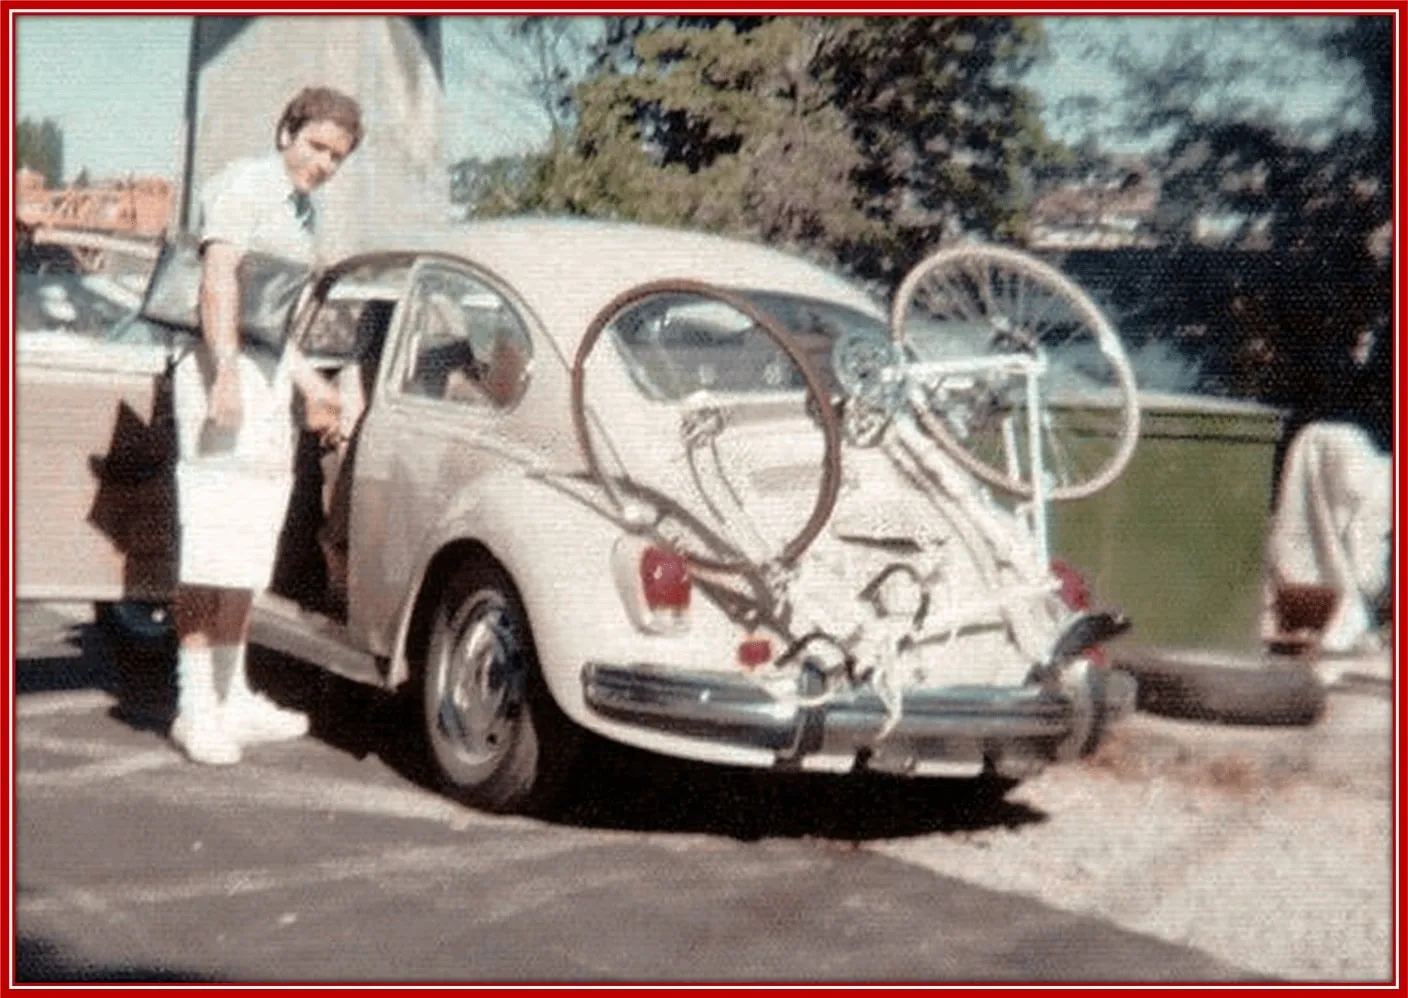 Bundy's Tan Volkswagen Beetle helped him commit gruesome murders.